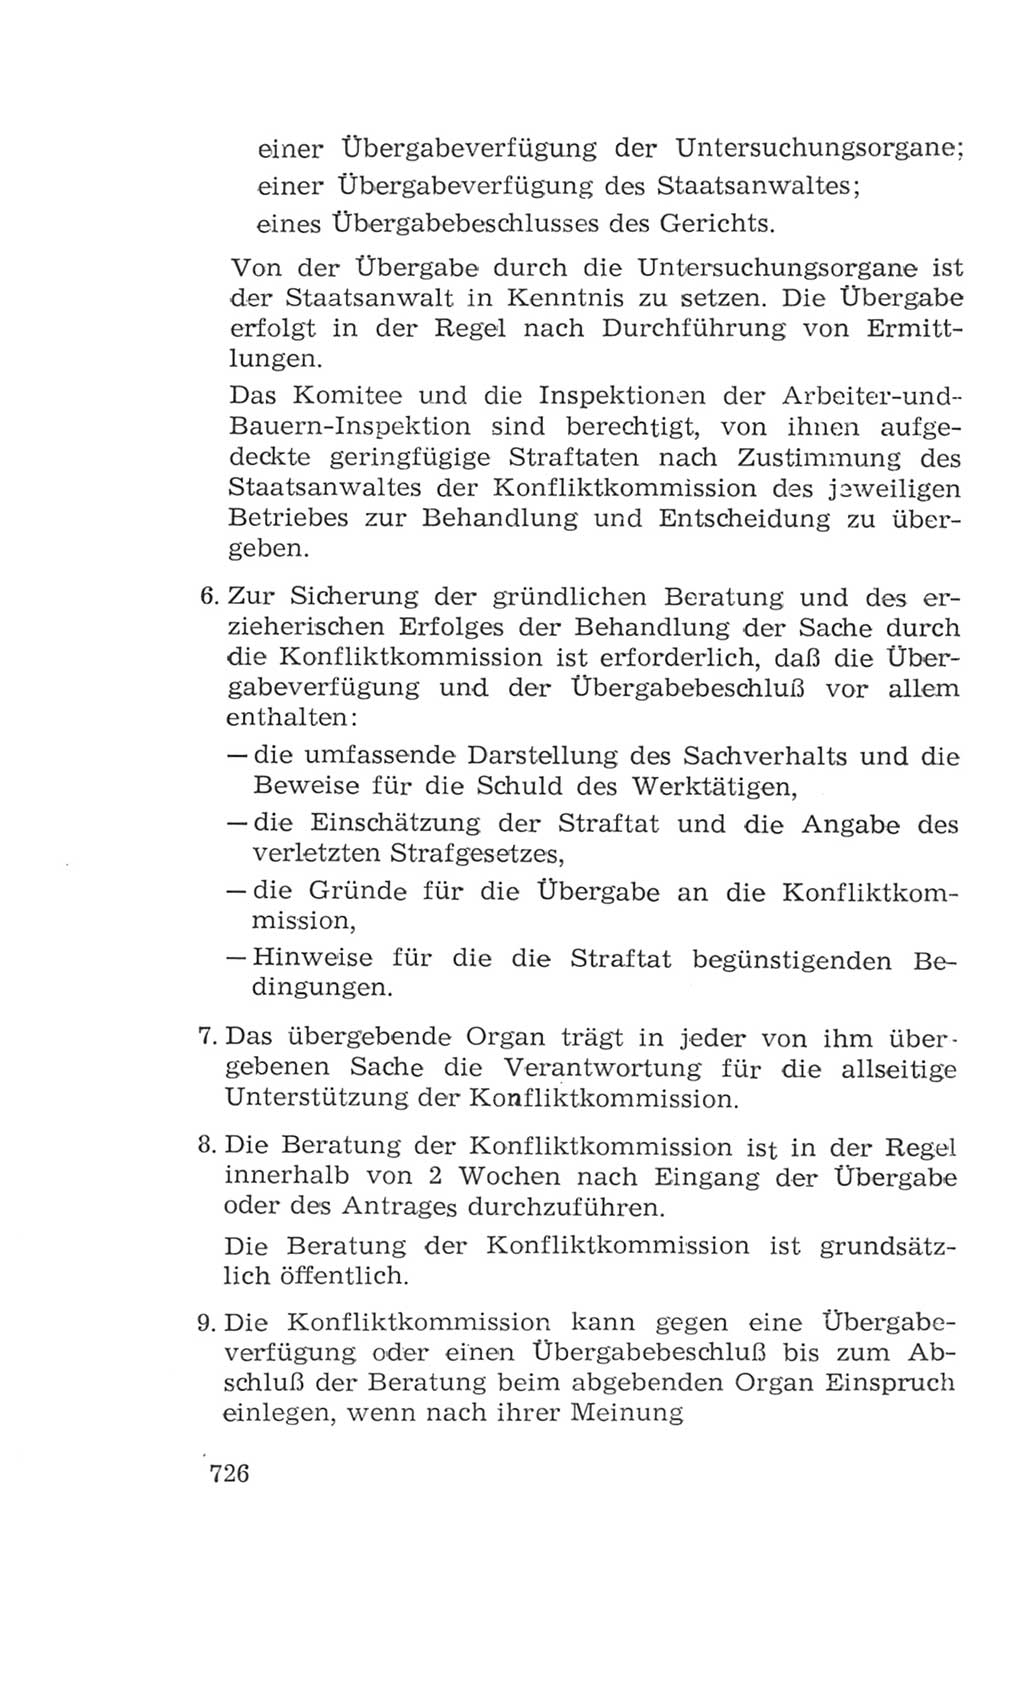 Volkskammer (VK) der Deutschen Demokratischen Republik (DDR), 4. Wahlperiode 1963-1967, Seite 726 (VK. DDR 4. WP. 1963-1967, S. 726)